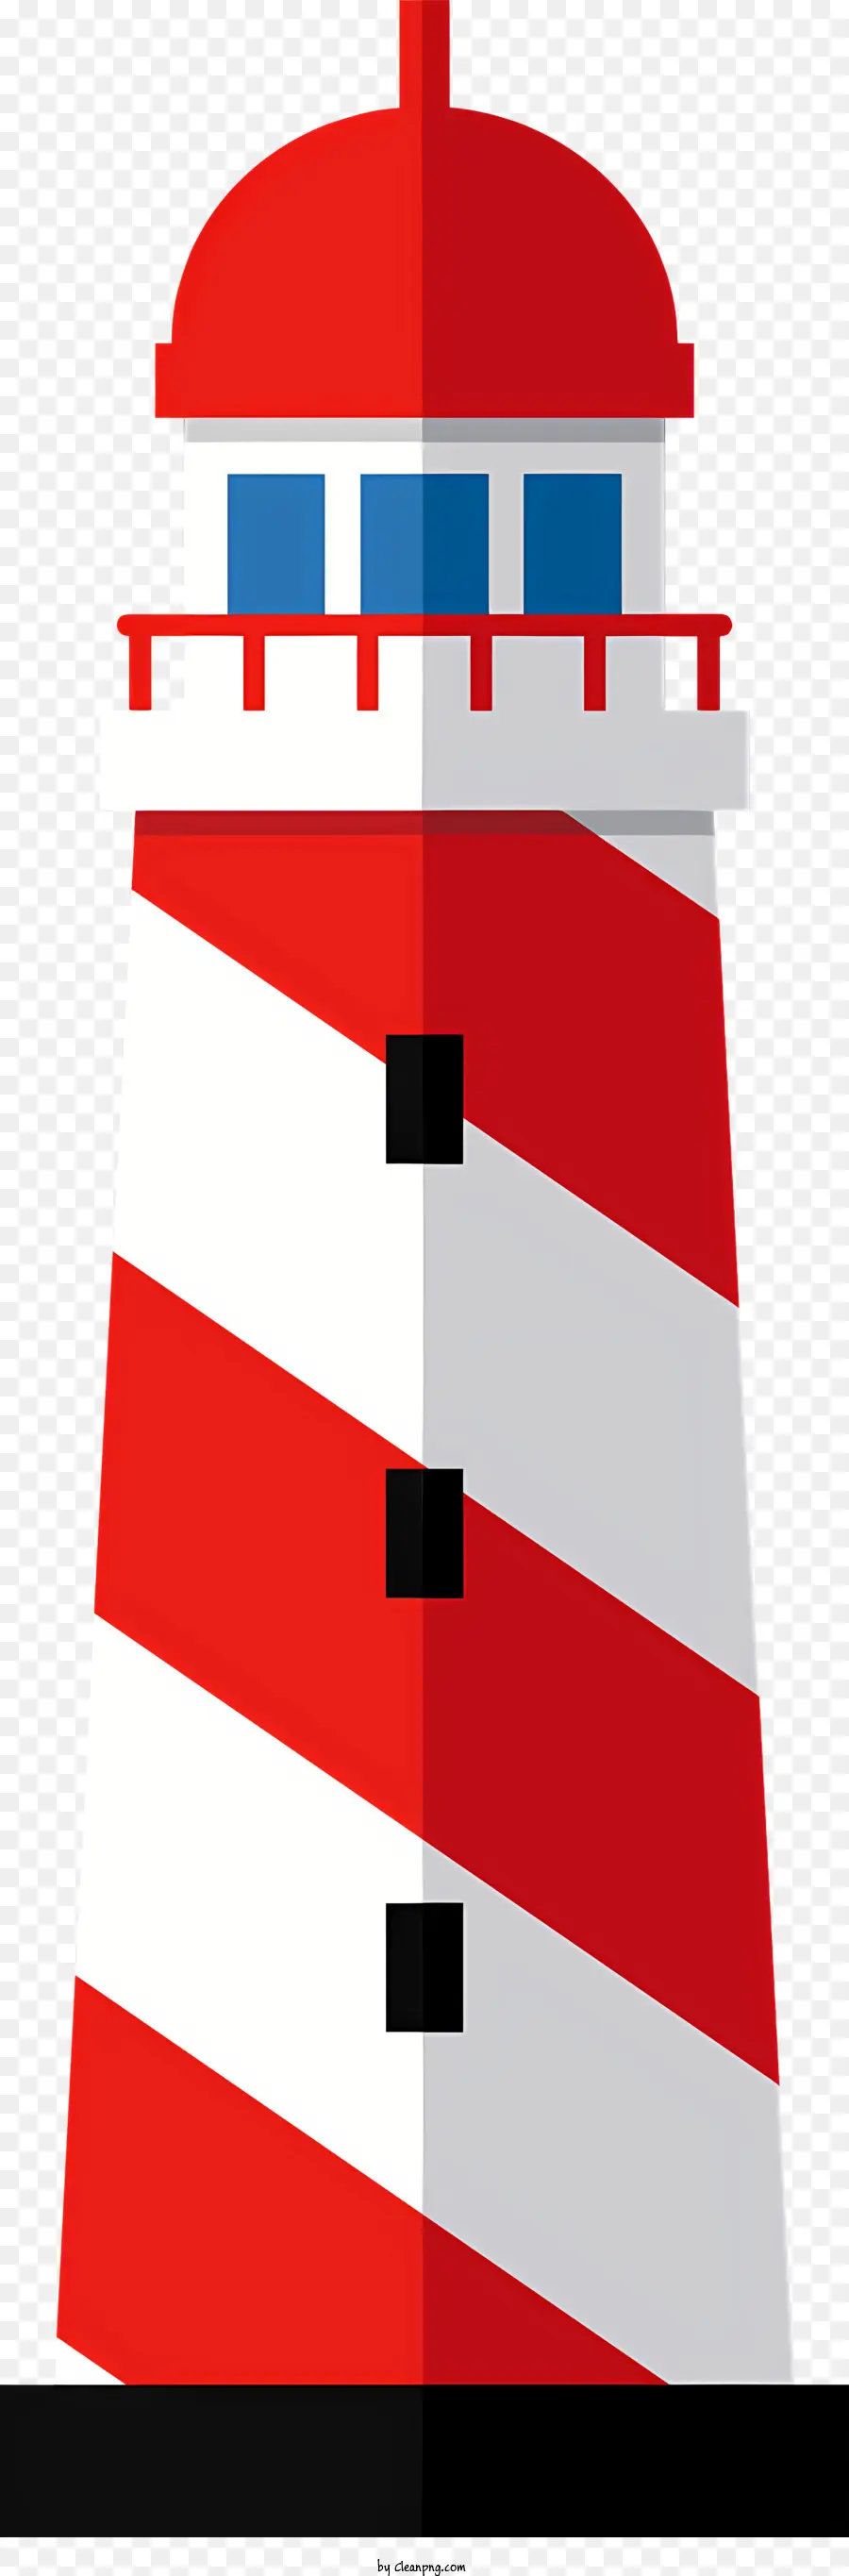 icon Lighthouse Red and White Stripes Tower Ocean - Immagine in bianco e nero del faro a strisce circondata dall'acqua